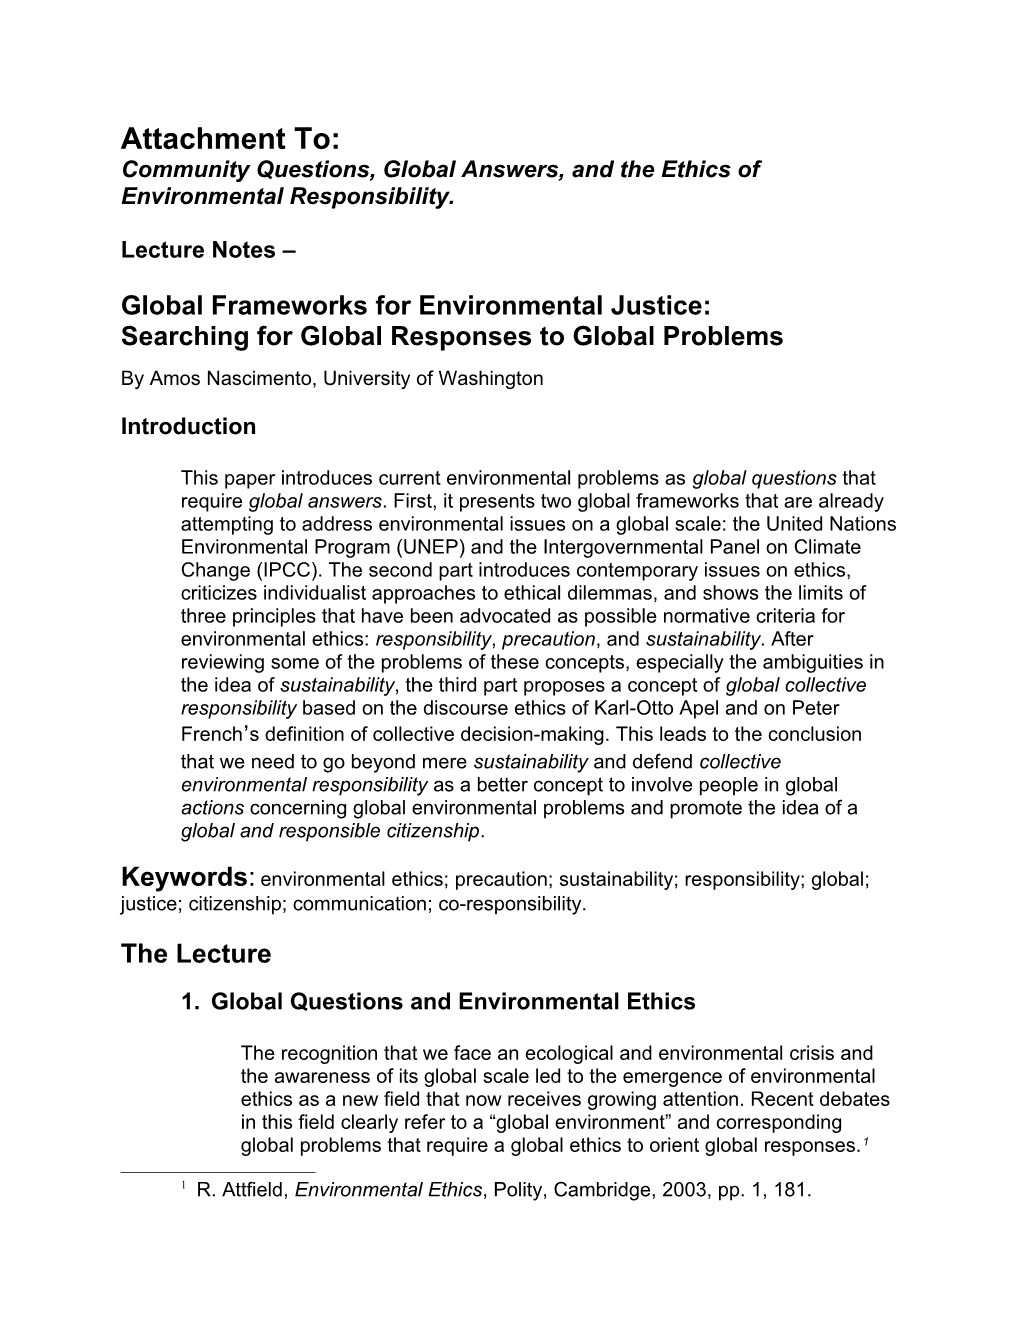 Global Frameworks for Environmental Justice